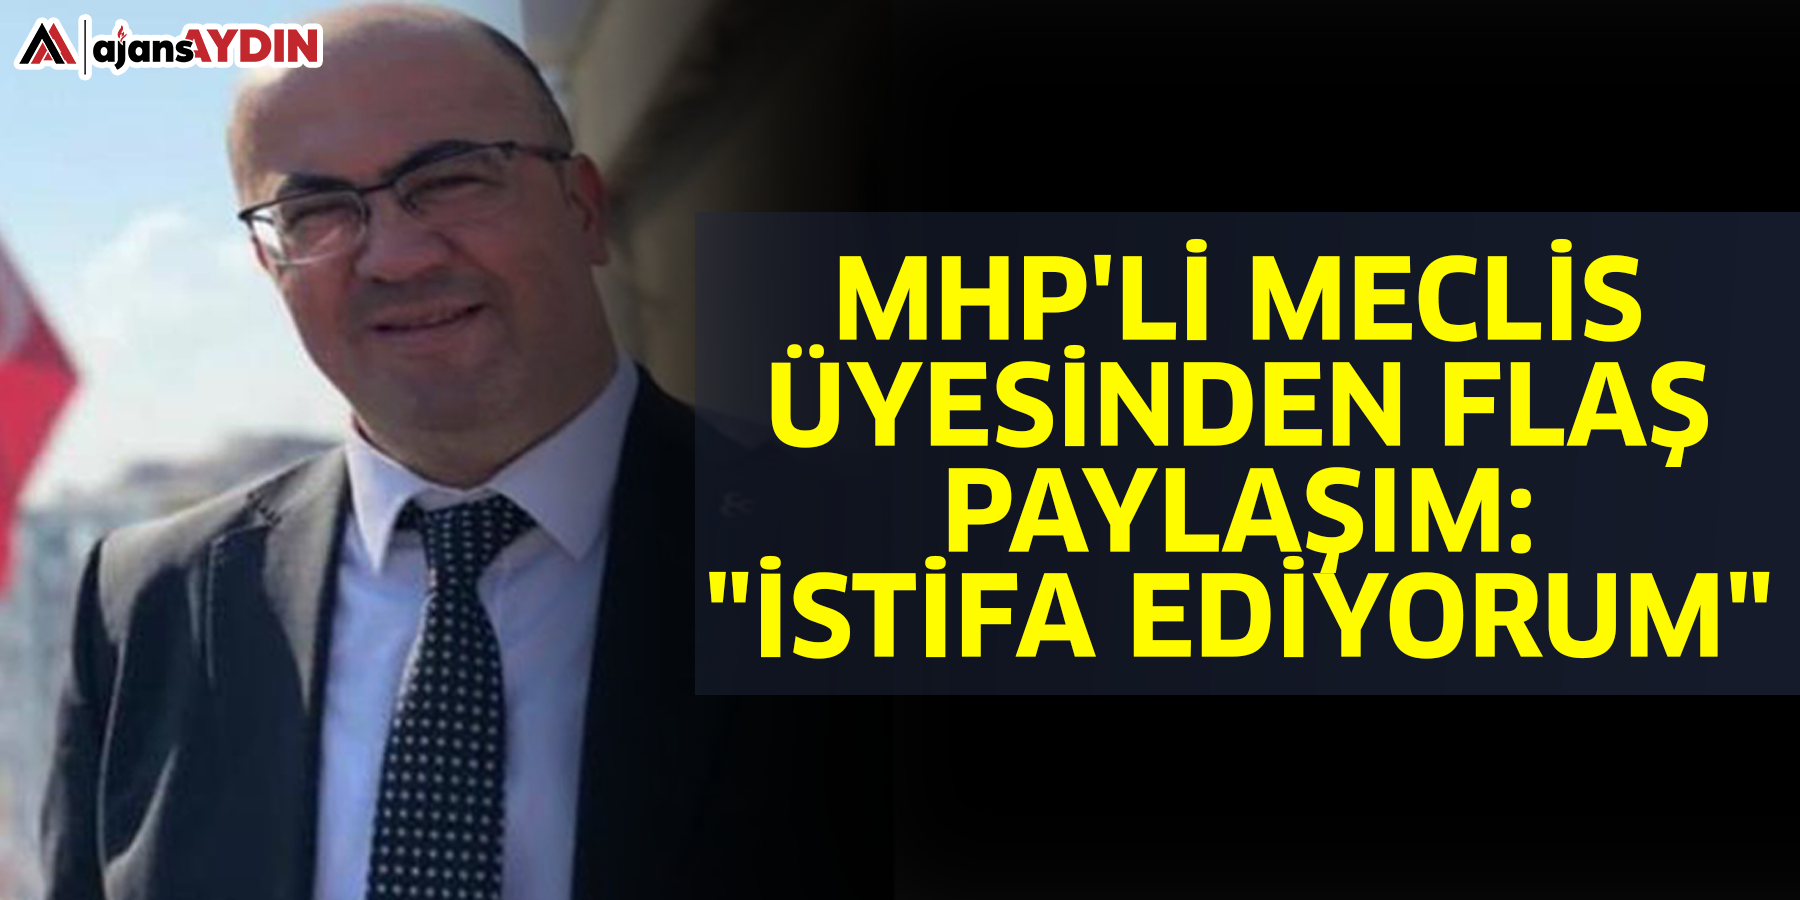 MHP'li meclis üyesinden flaş paylaşım: "İstifa ediyorum"